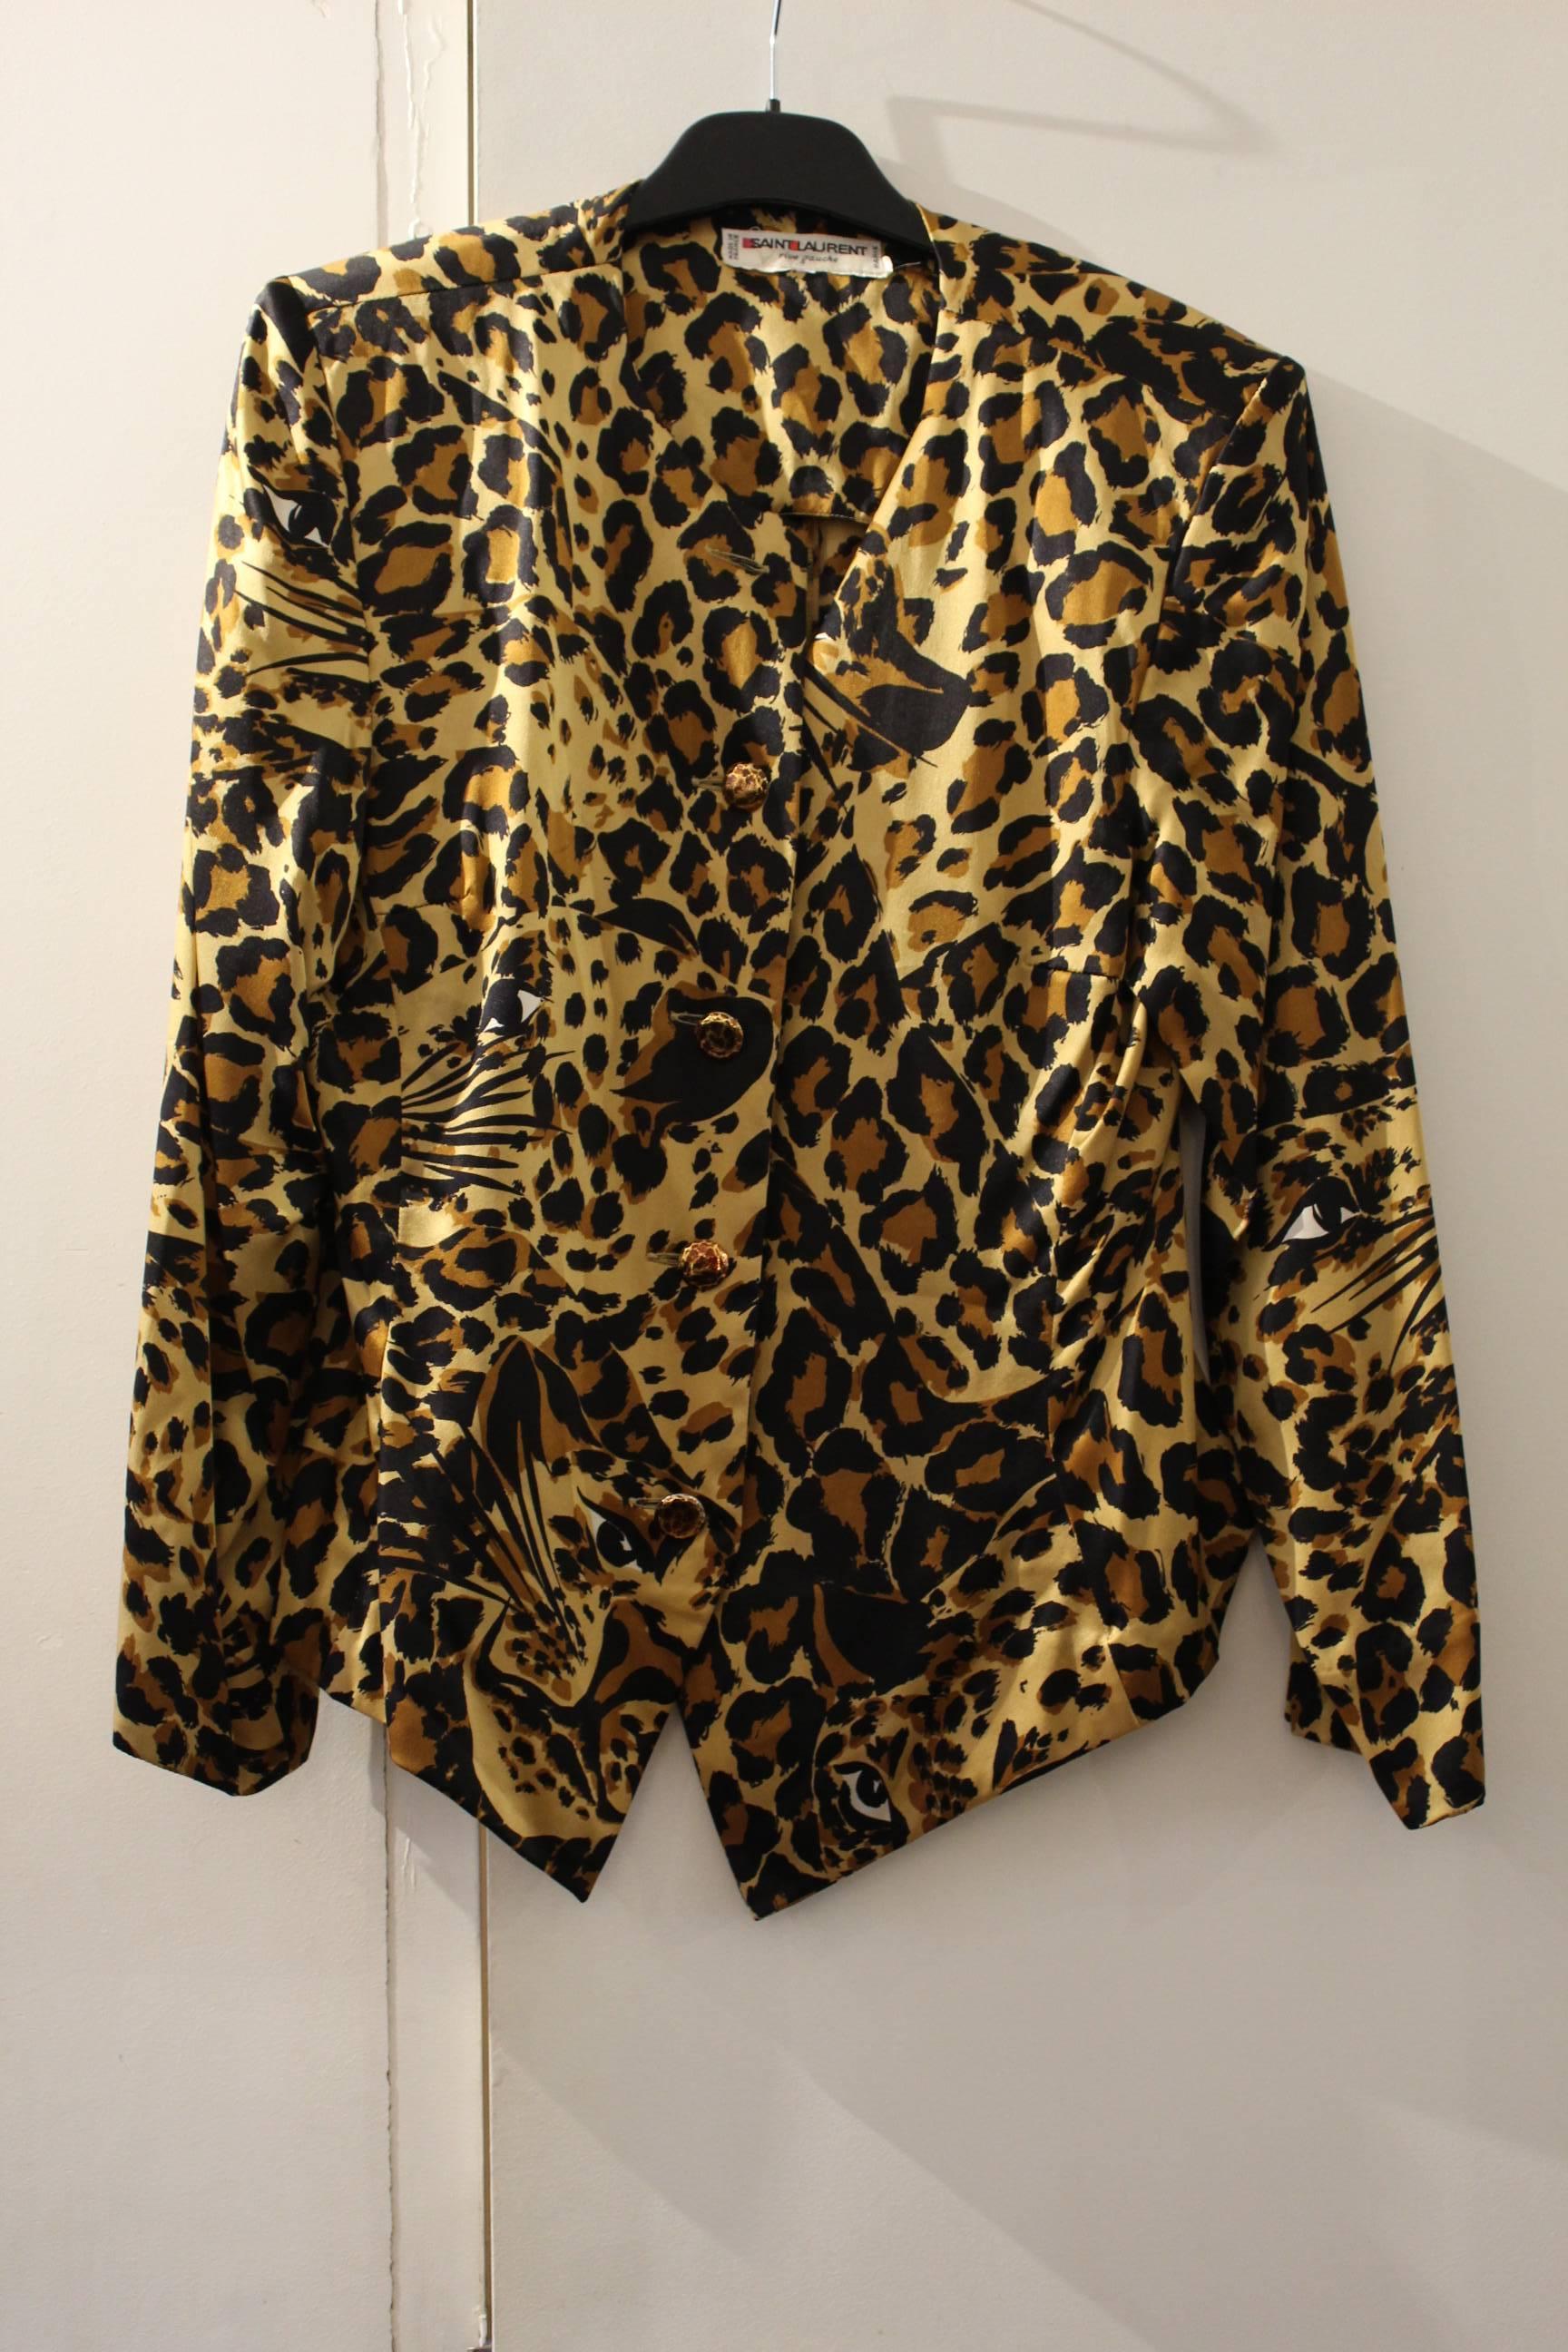 Women's Yves Saint Laurent Vintage Leopard Printing Blouse For Sale